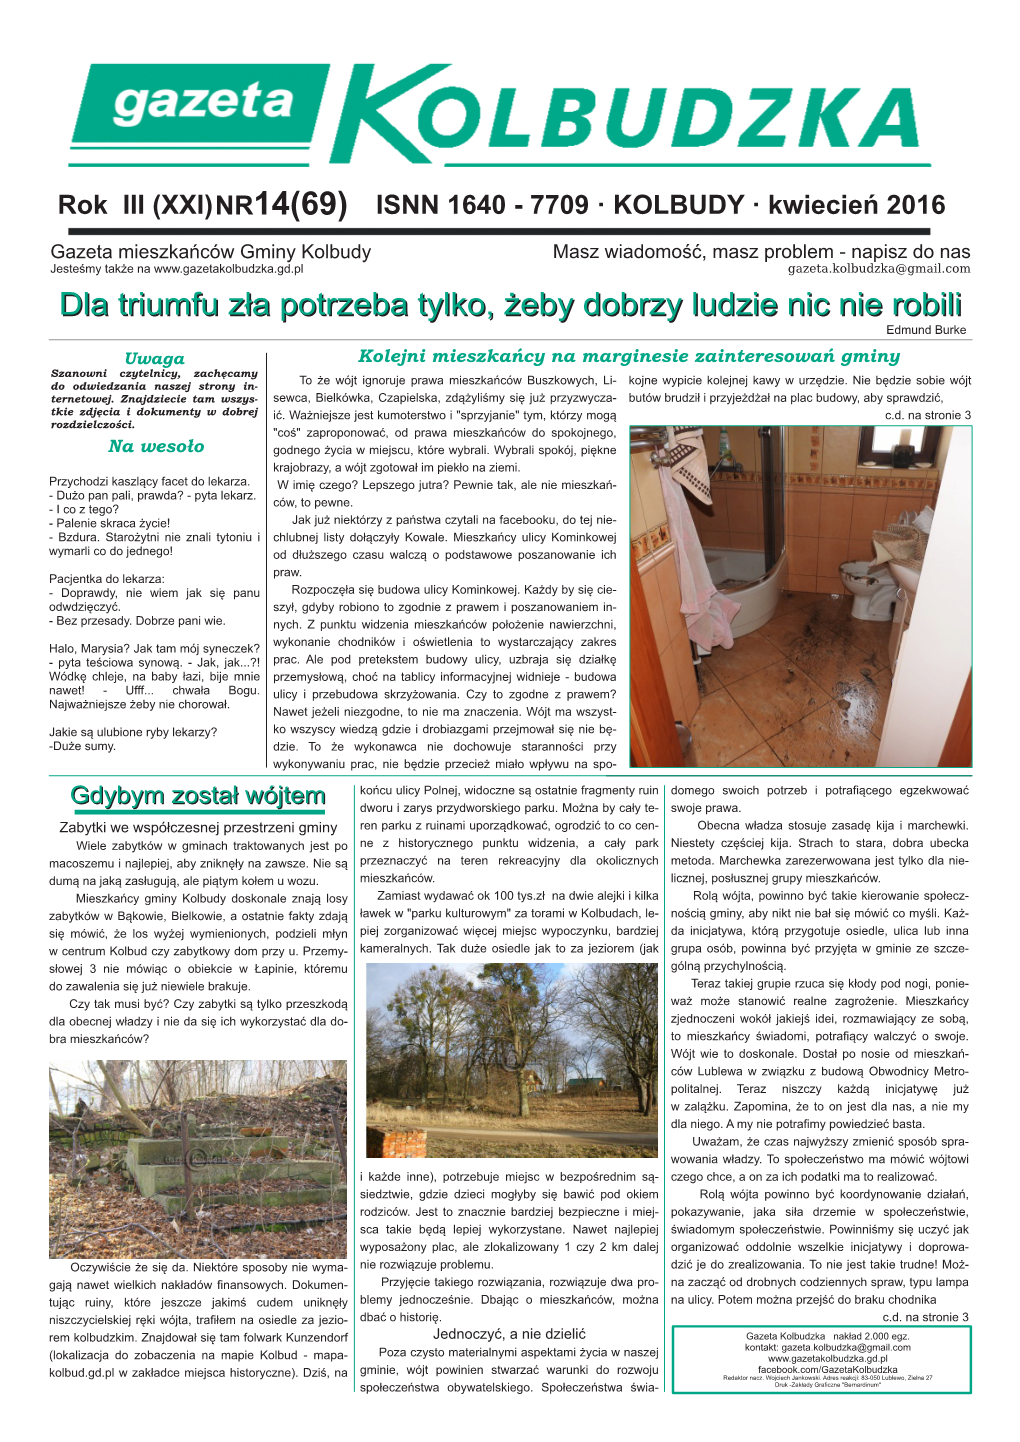 D:/Moje Dokumenty/Gazeta Kolbudzka/Gazeta Nr 14/Newsletter14.Sla